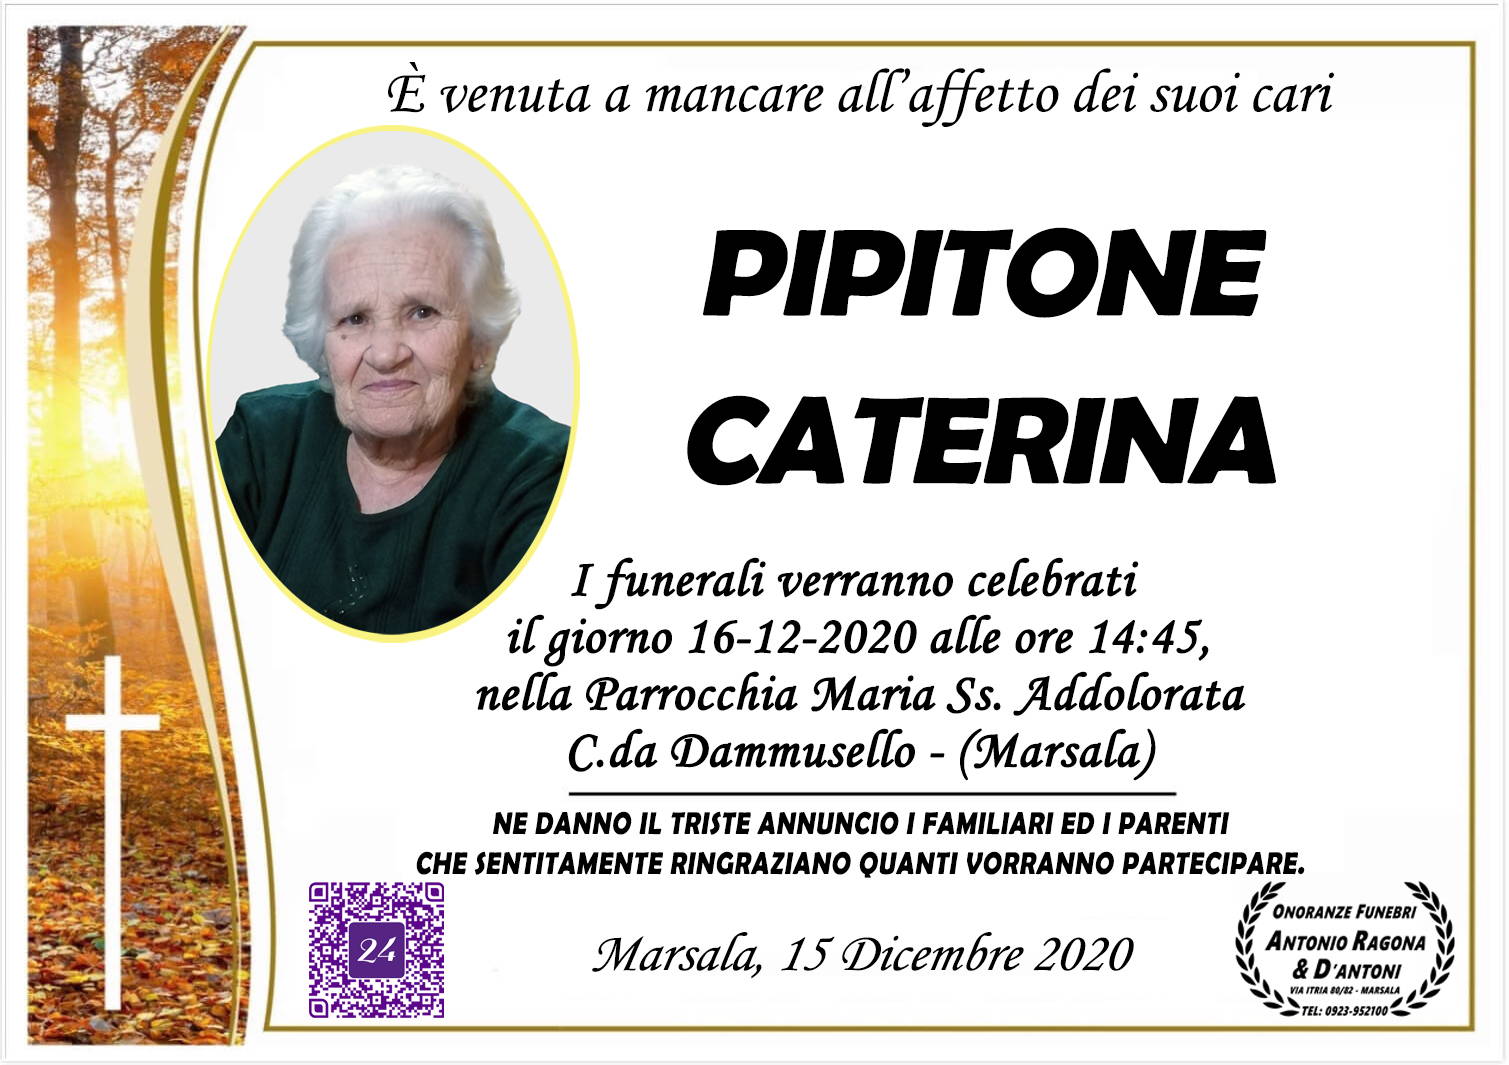 Caterina Pipitone